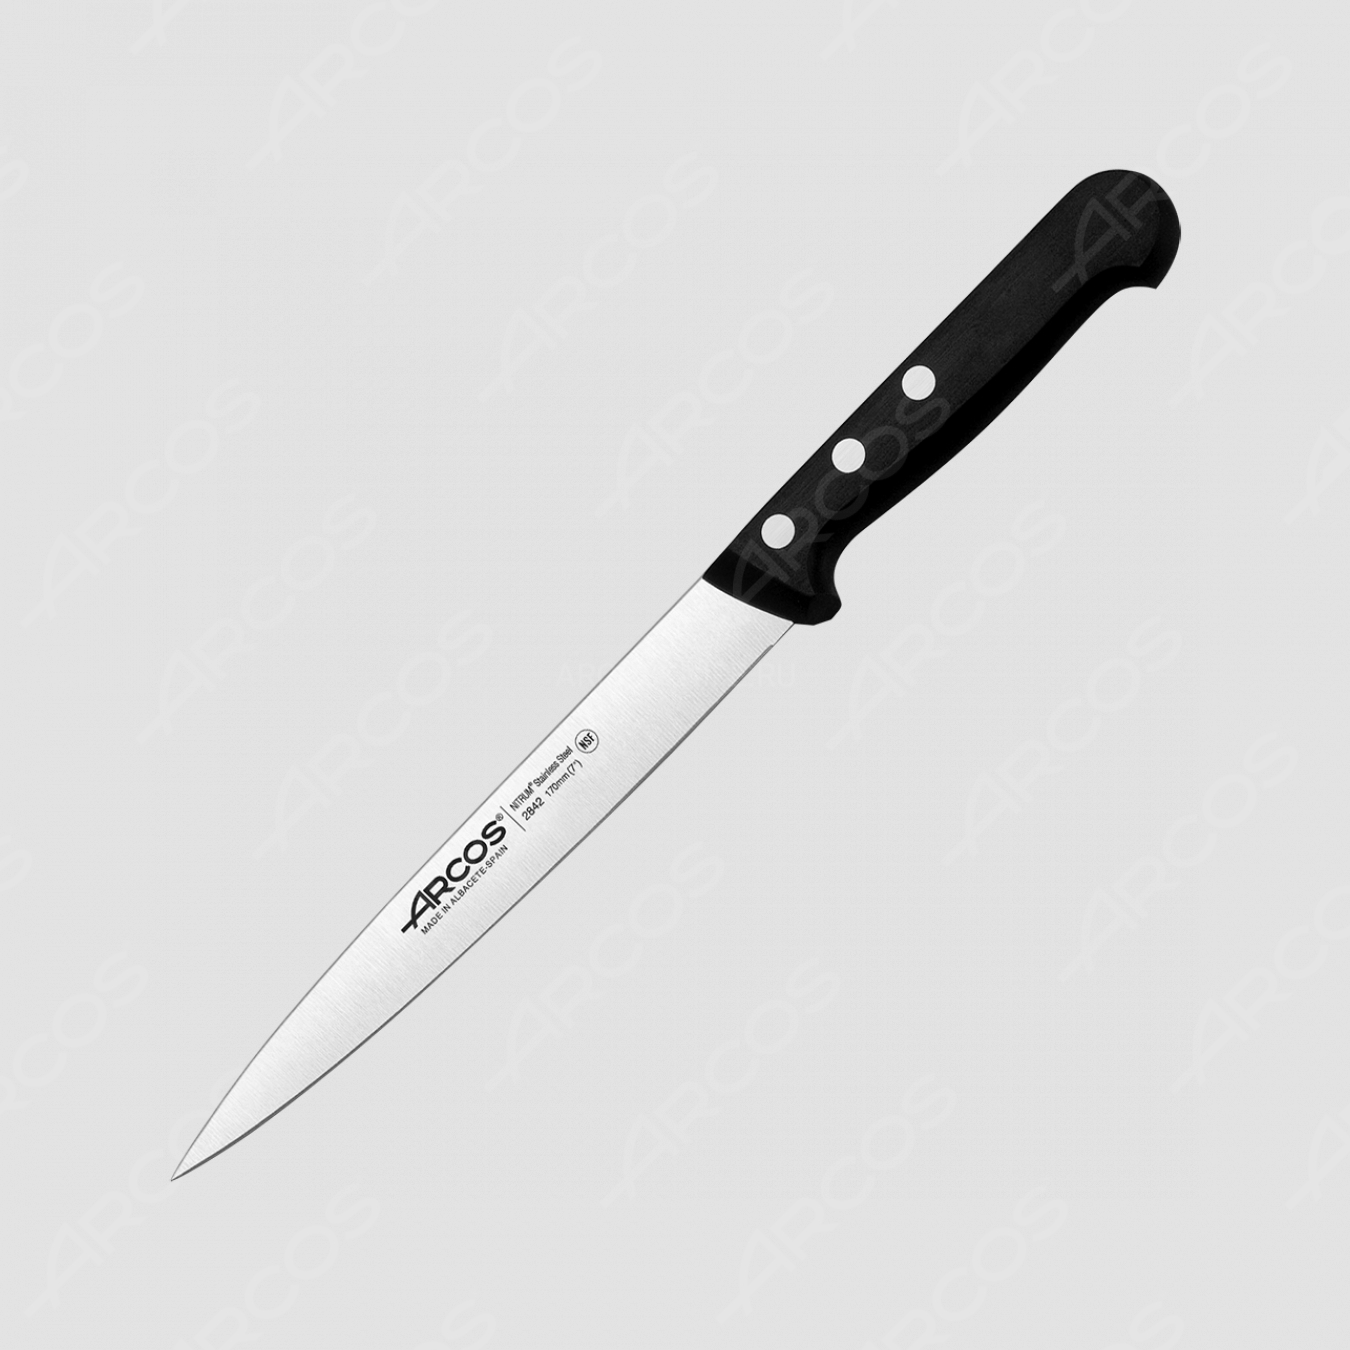 Нож кухонный филейный для рыбы 17 см, серия Universal, ARCOS, Испания